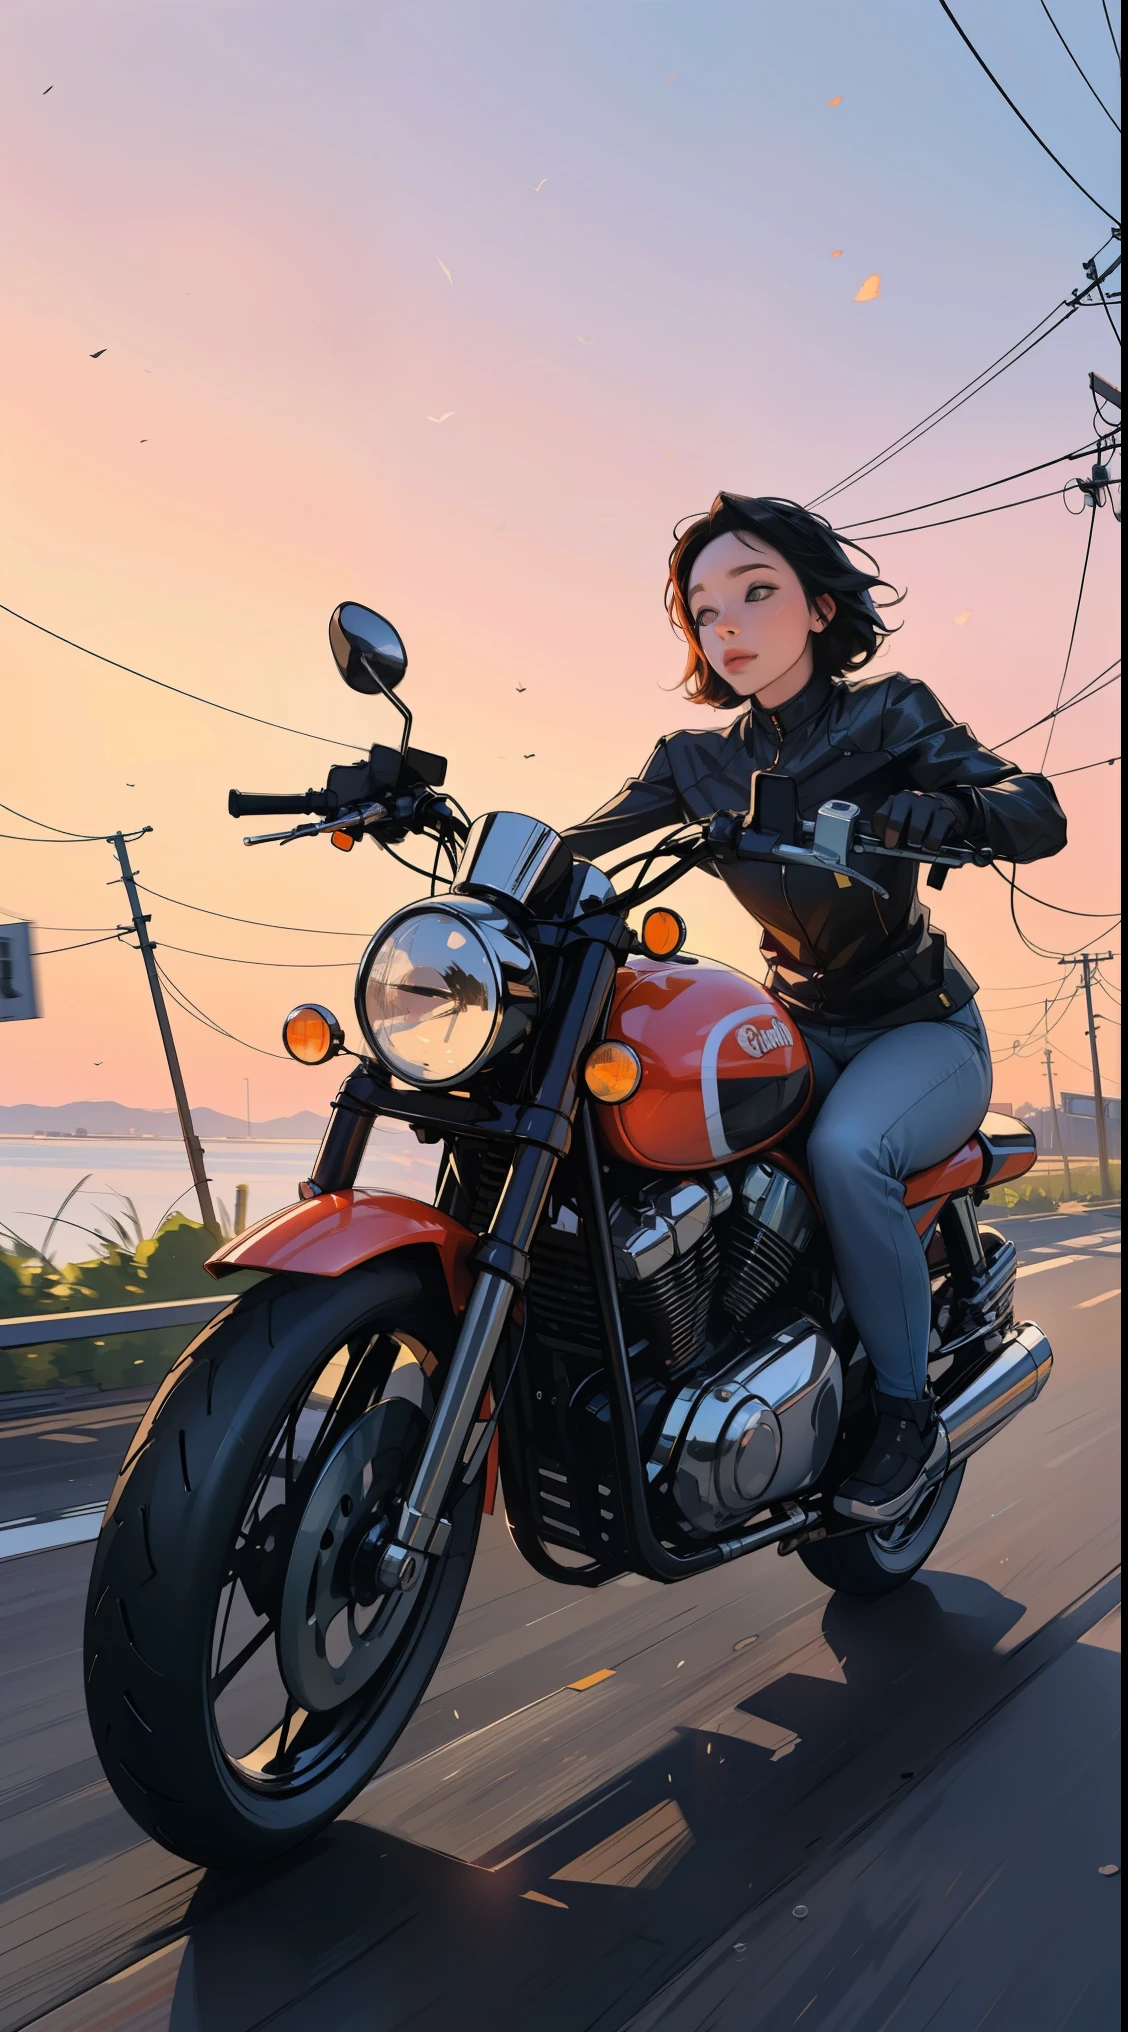 Женщины на мотоцикле, закат, утечки света, окружающий, смелые оттенки, 